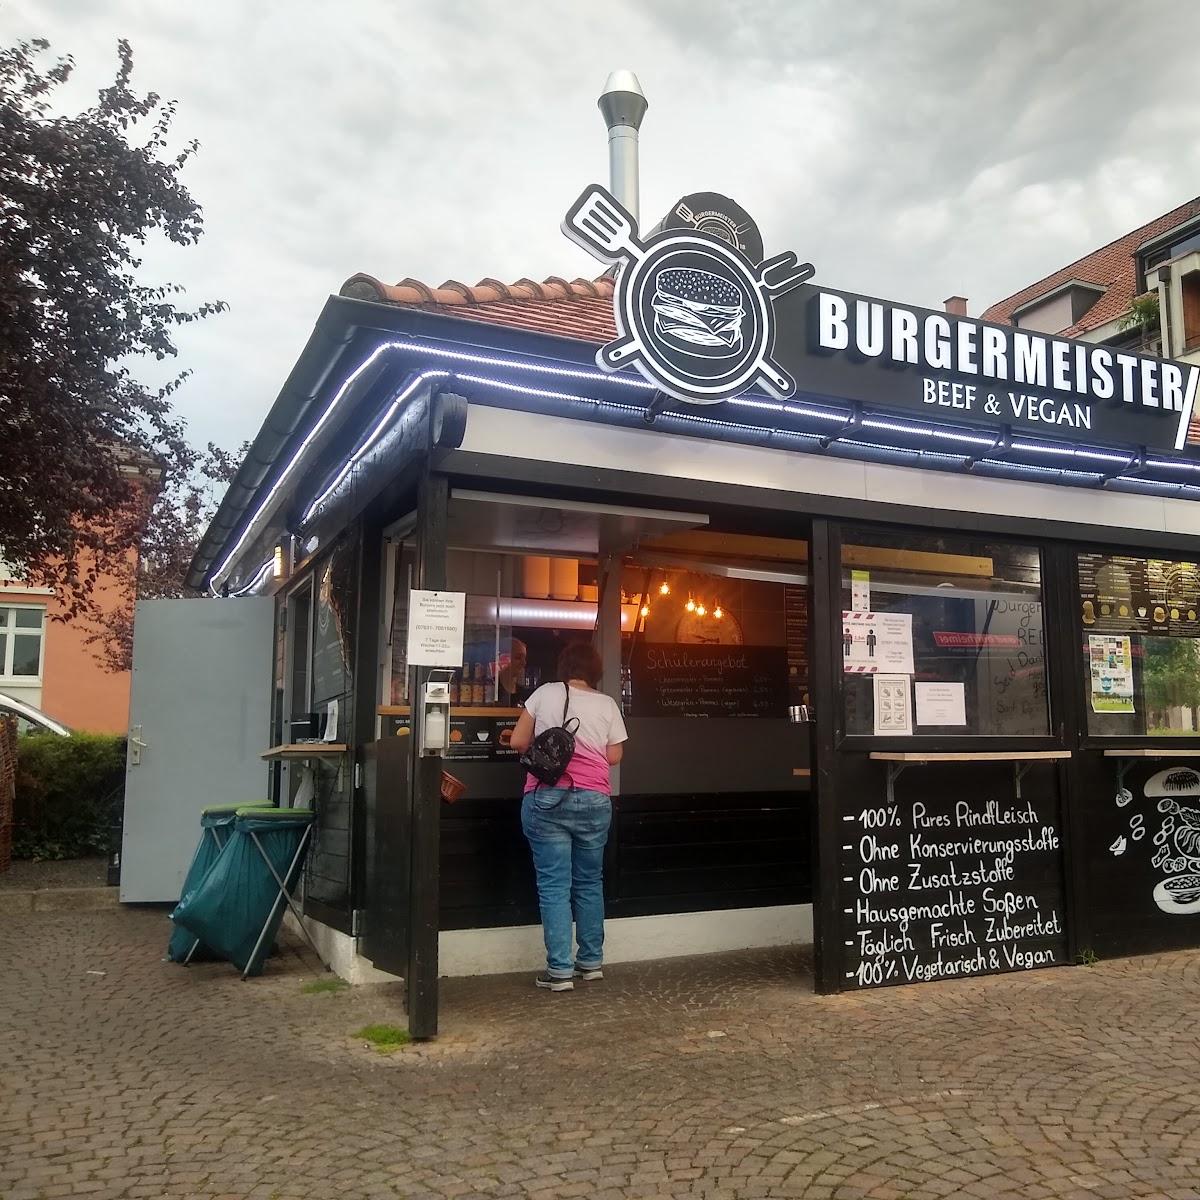 Restaurant "KUSHMEISTER Beef & Vegan" in Müllheim im Markgräflerland